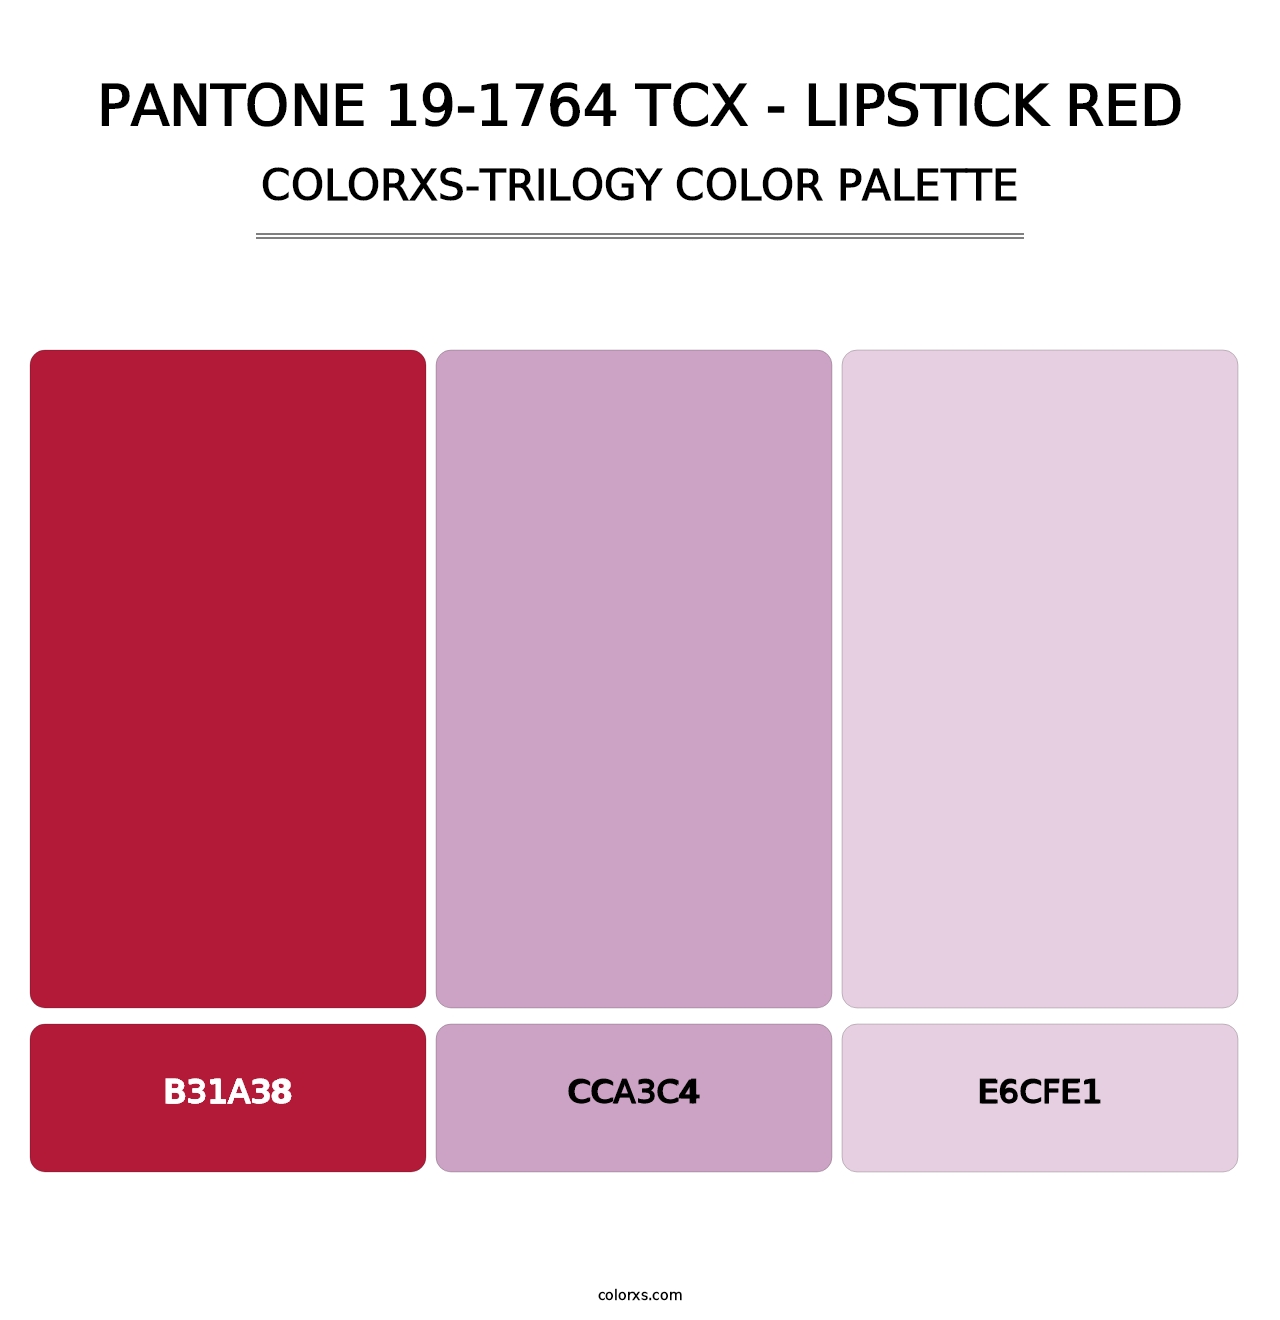 PANTONE 19-1764 TCX - Lipstick Red - Colorxs Trilogy Palette